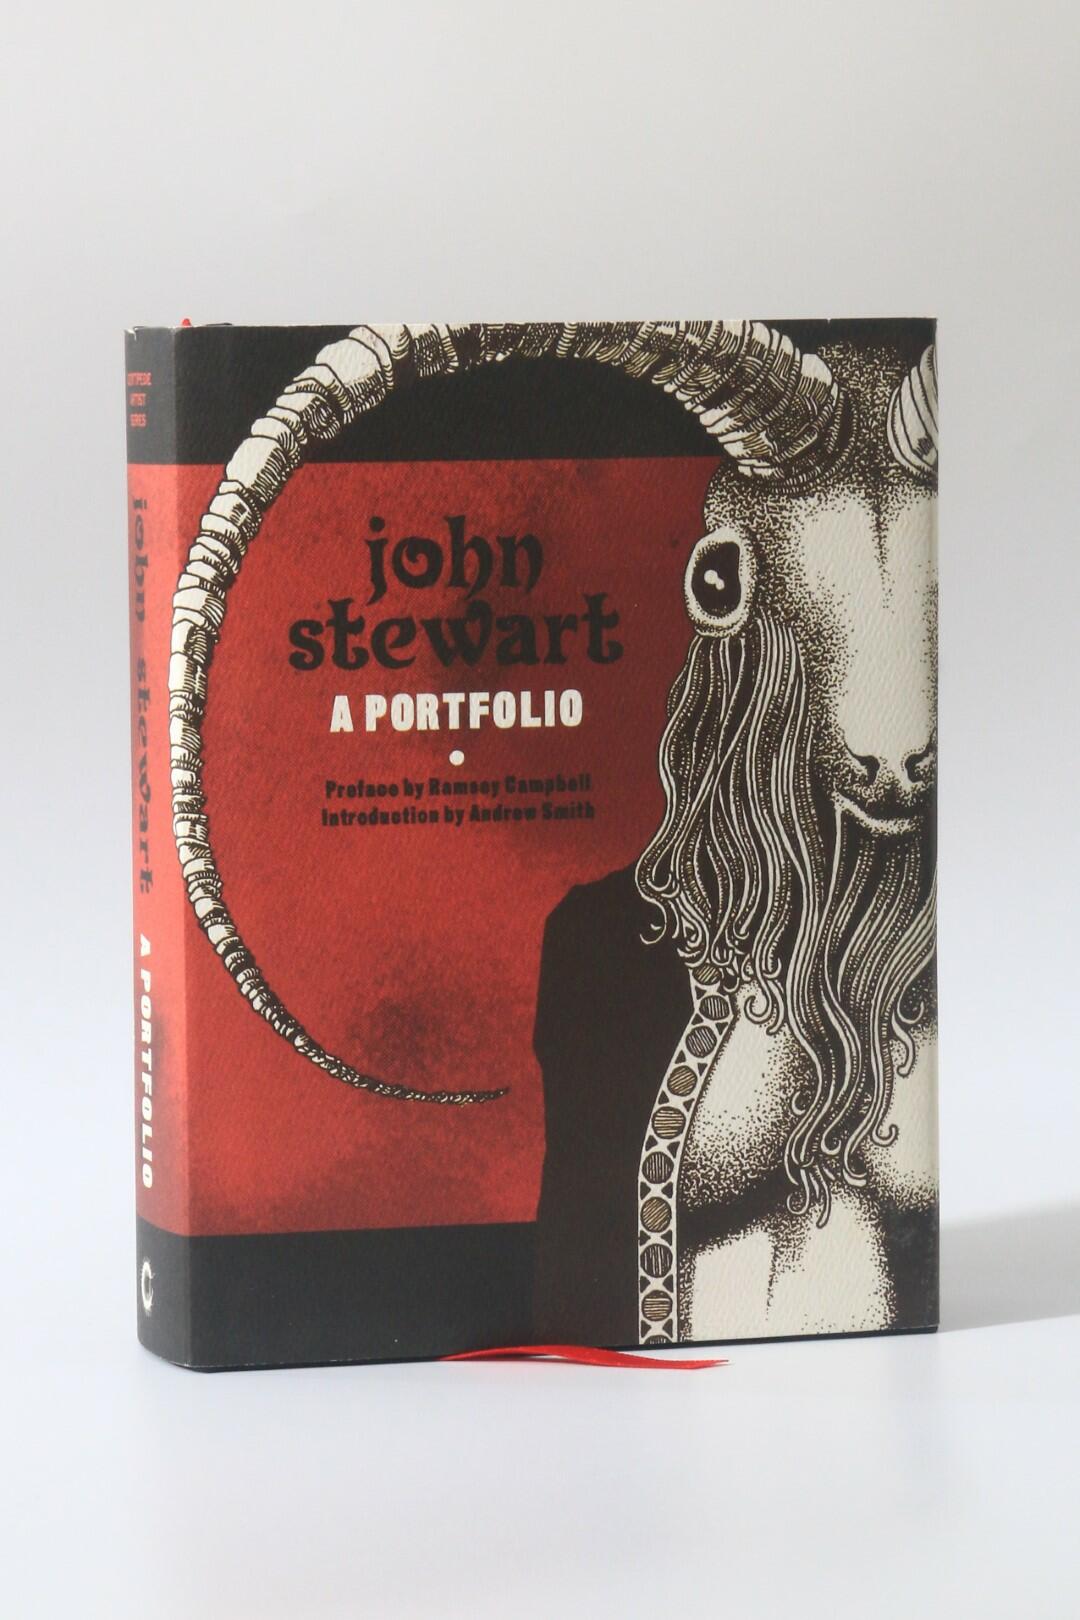 John Stewart - John Stewart: A Portfolio - Centipede Press, 2011, First Edition.